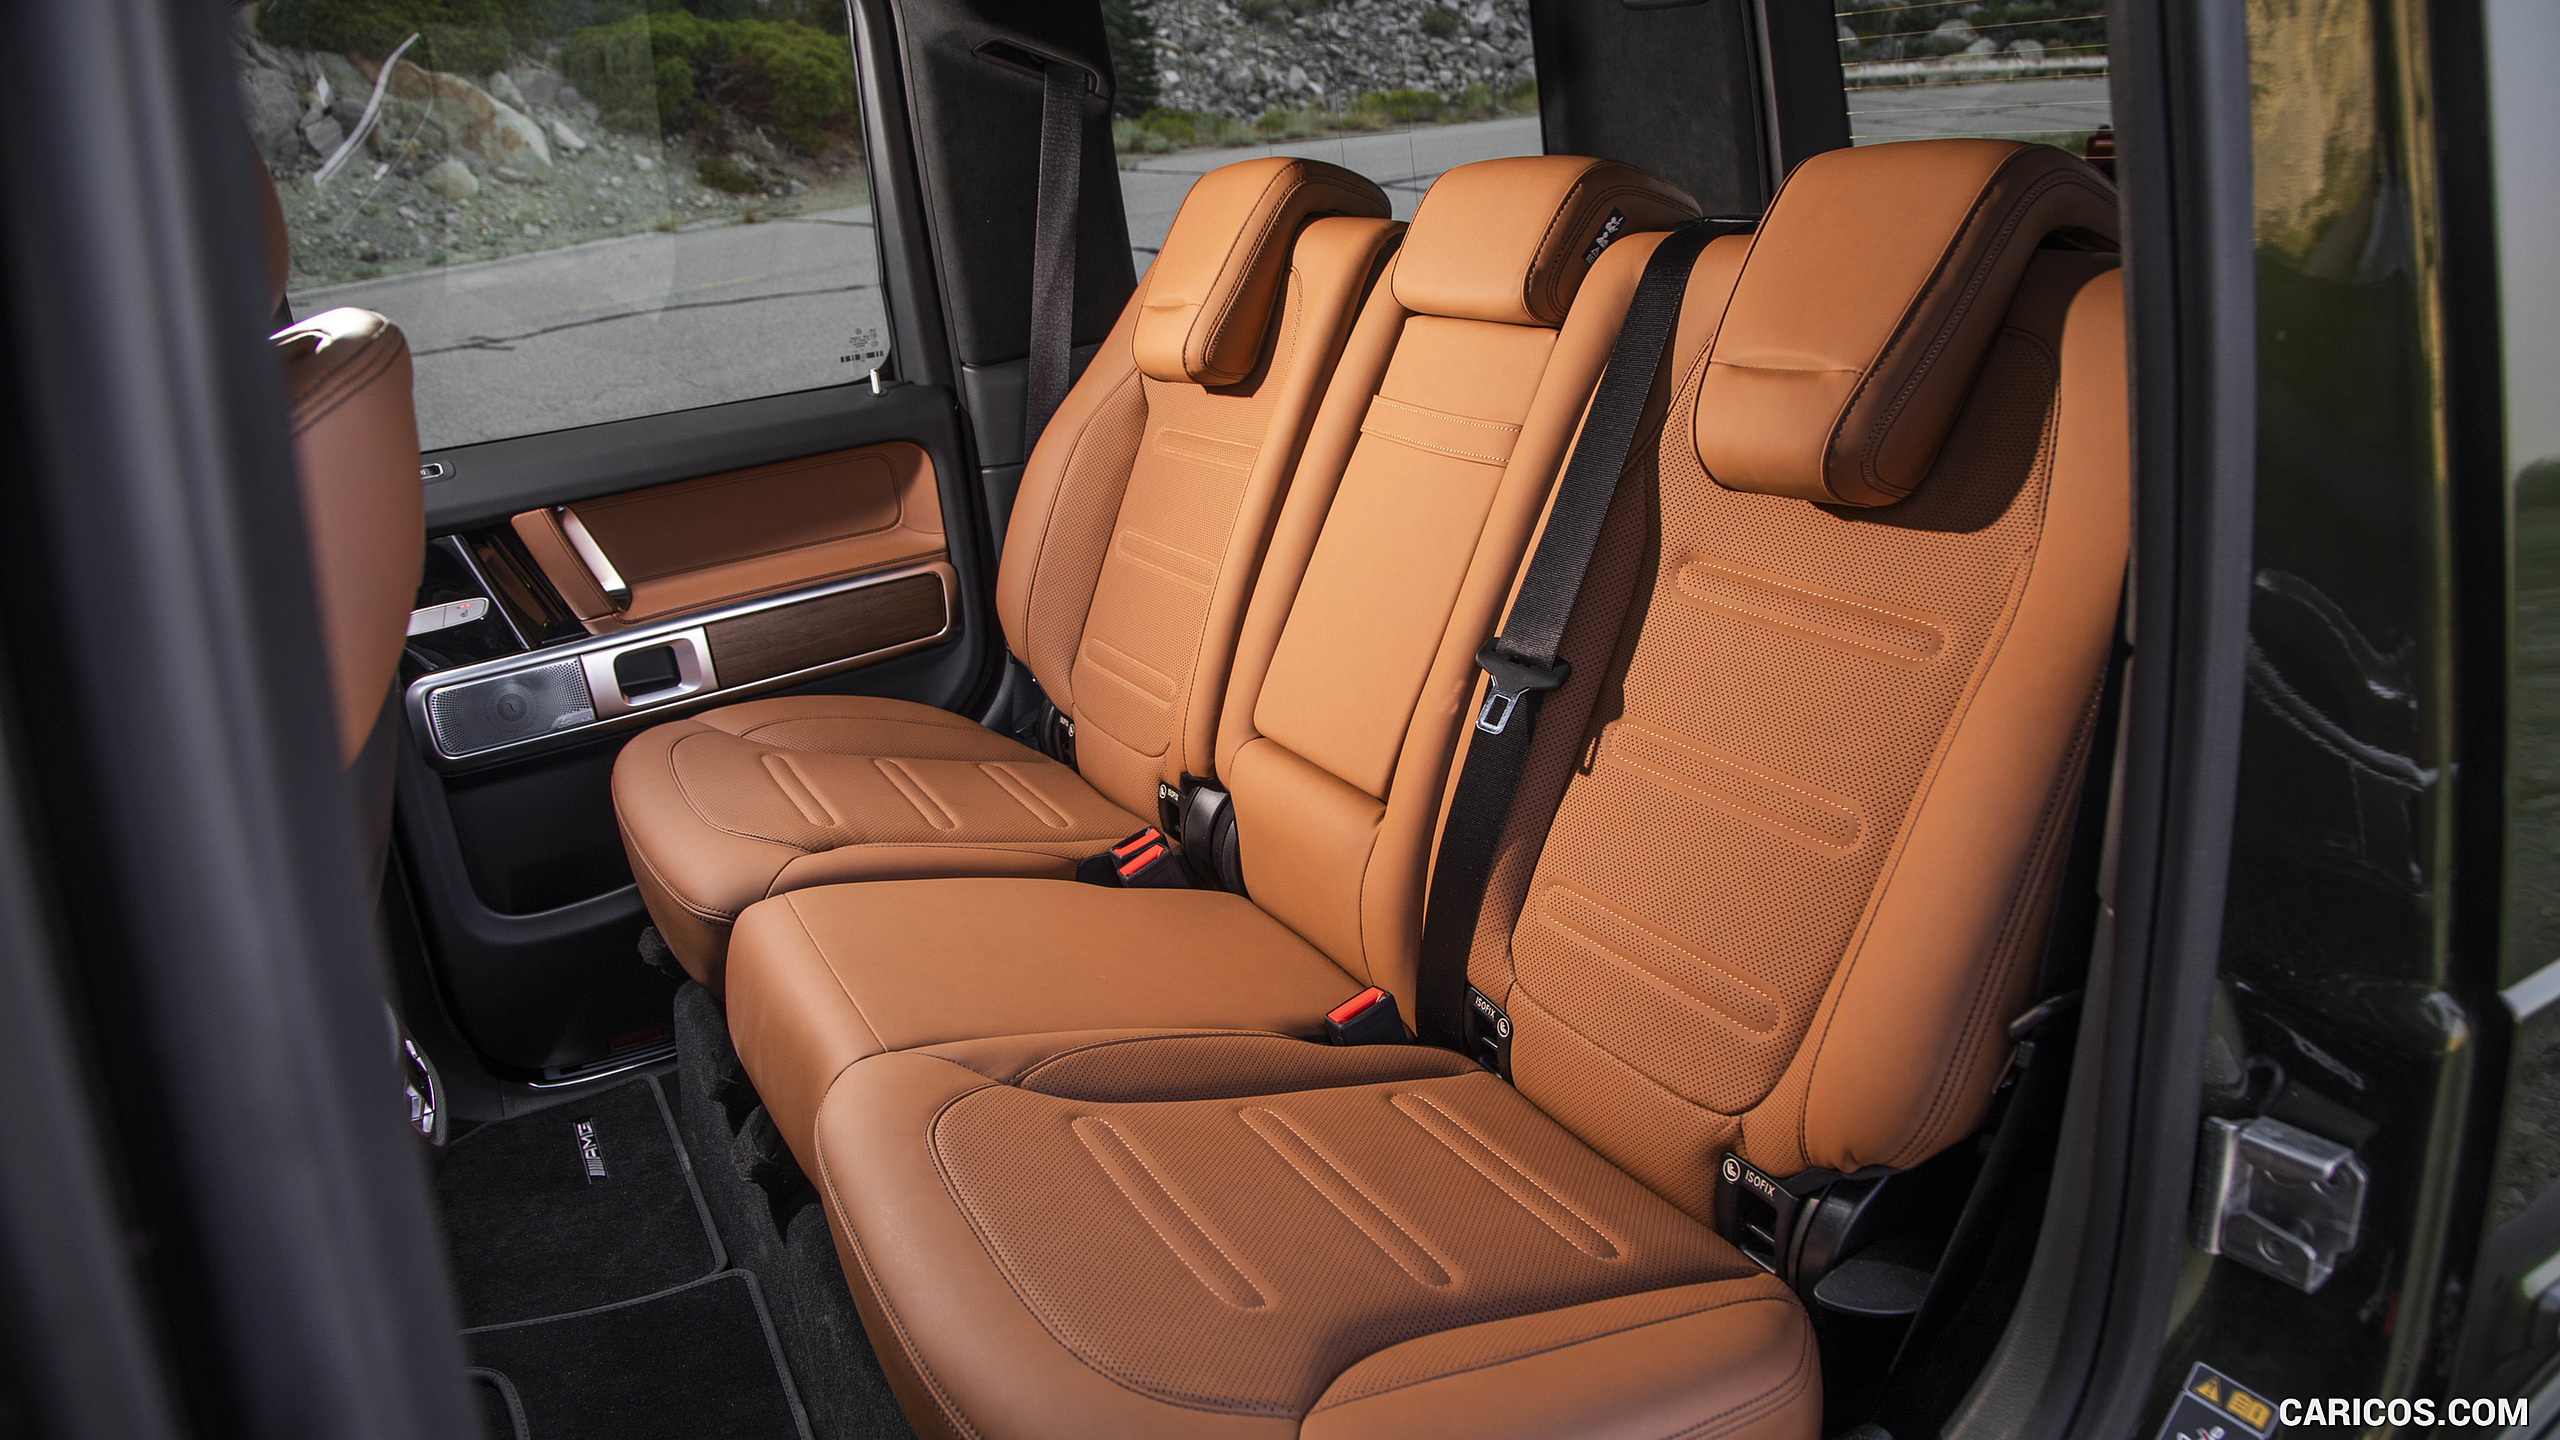 2019 Mercedes-Benz G550 G-Class (U.S.-Spec) - Interior, Rear Seats, #394 of 397